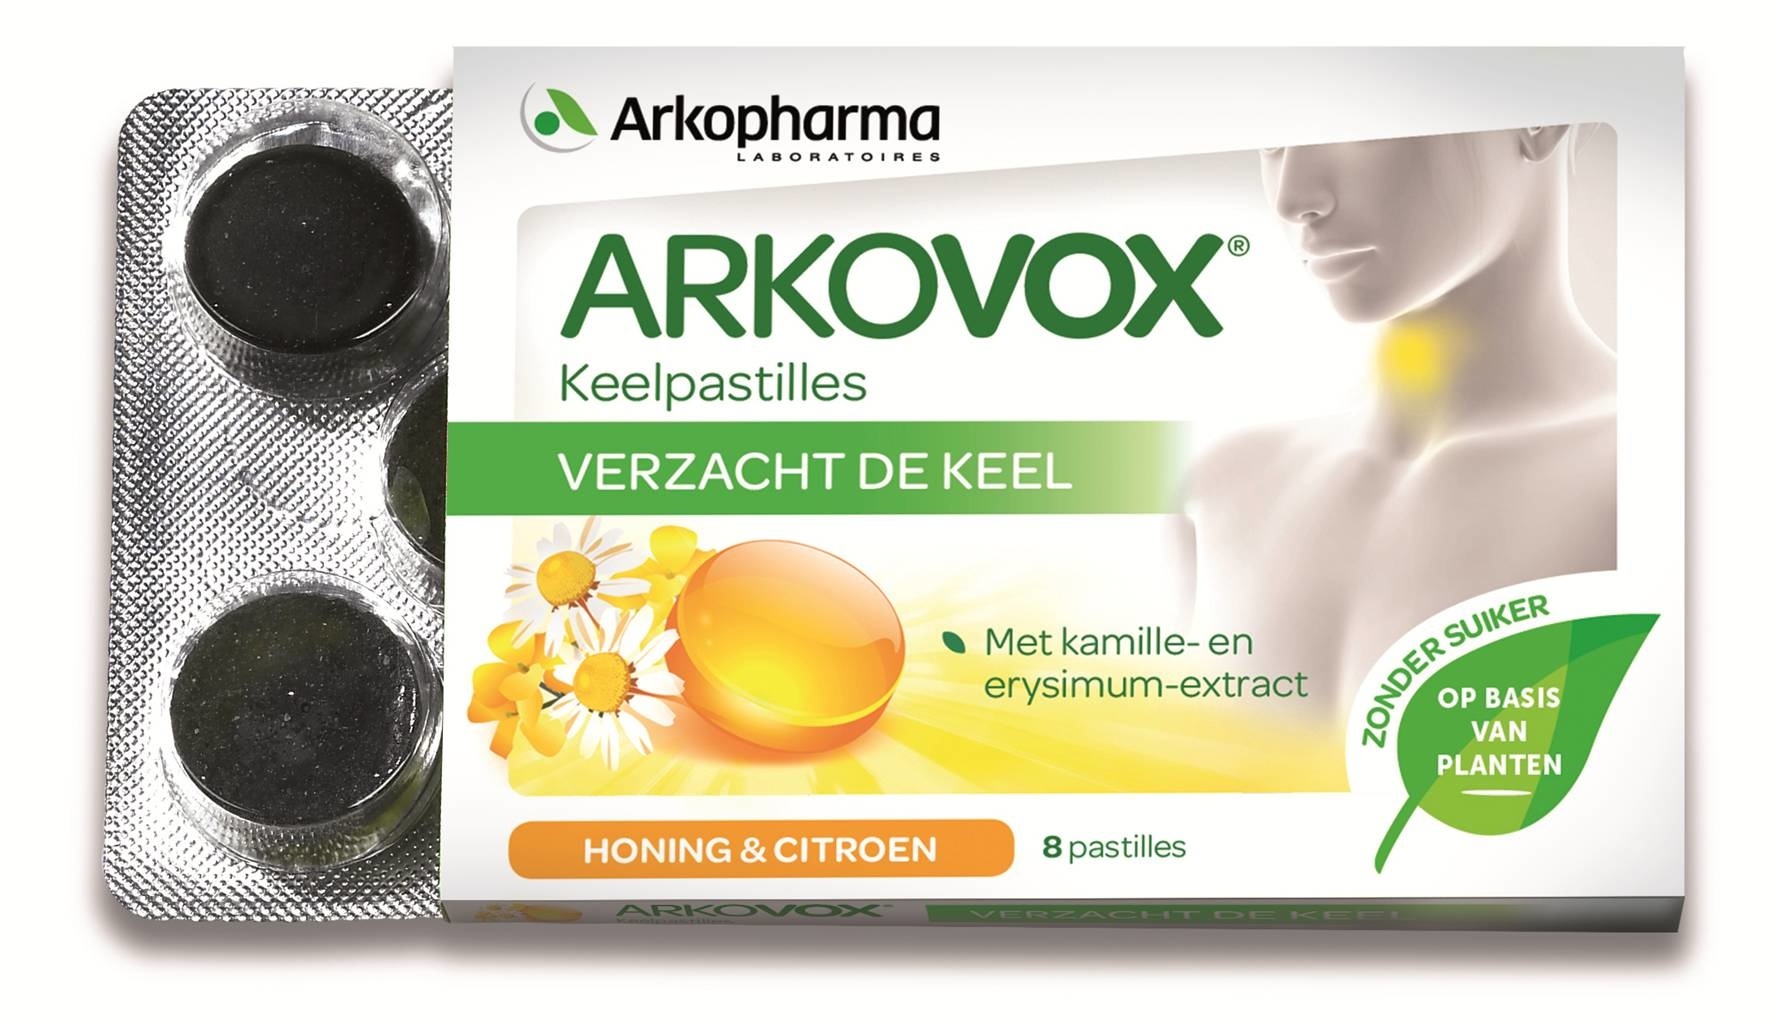 Arkopharma Arkopharma Arkovox keelpijn met honing en citroen (8 pastilles)